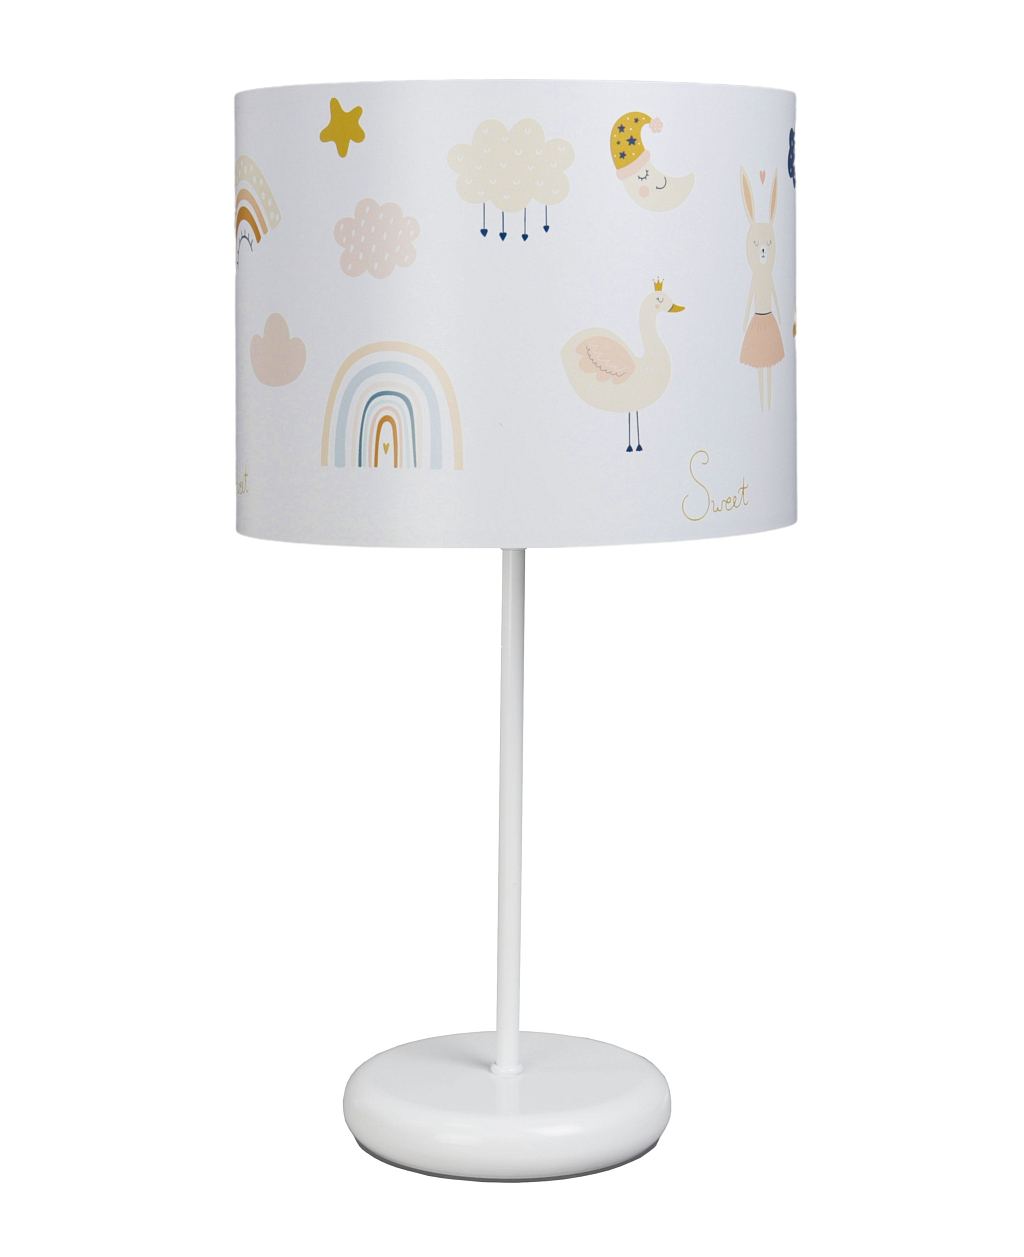 Biała lampka nocna na stolik do pokoju dziecka. Lampa nocna z kolorowym wzorem. Tęcza.